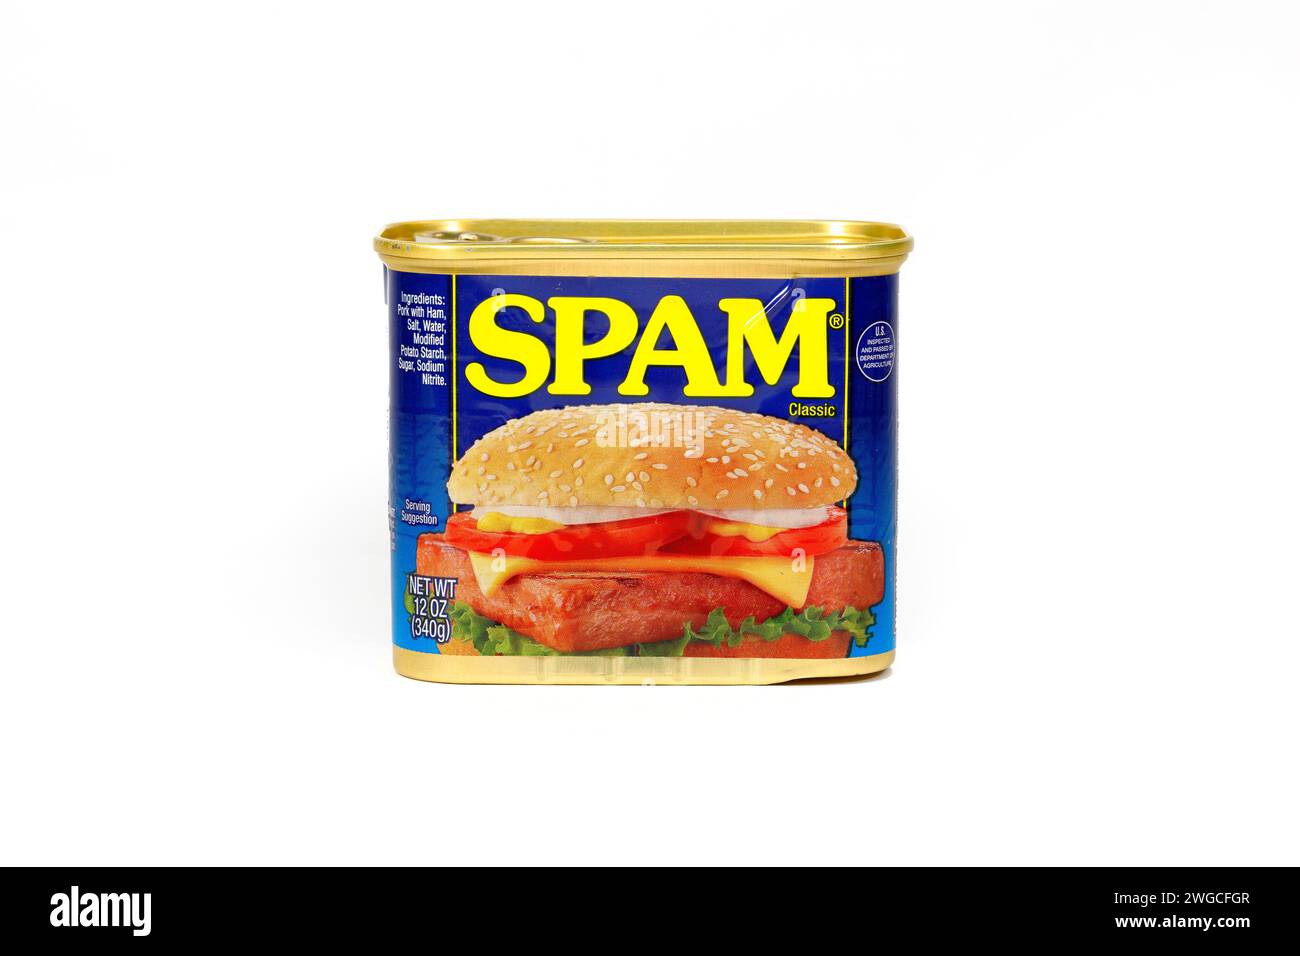 Eine Dose Hormel Foods SPAM Classic verarbeitetes Schweinefleisch isoliert auf weißem Hintergrund. Ausschnitt zur Illustration und redaktionellen Verwendung. Stockfoto